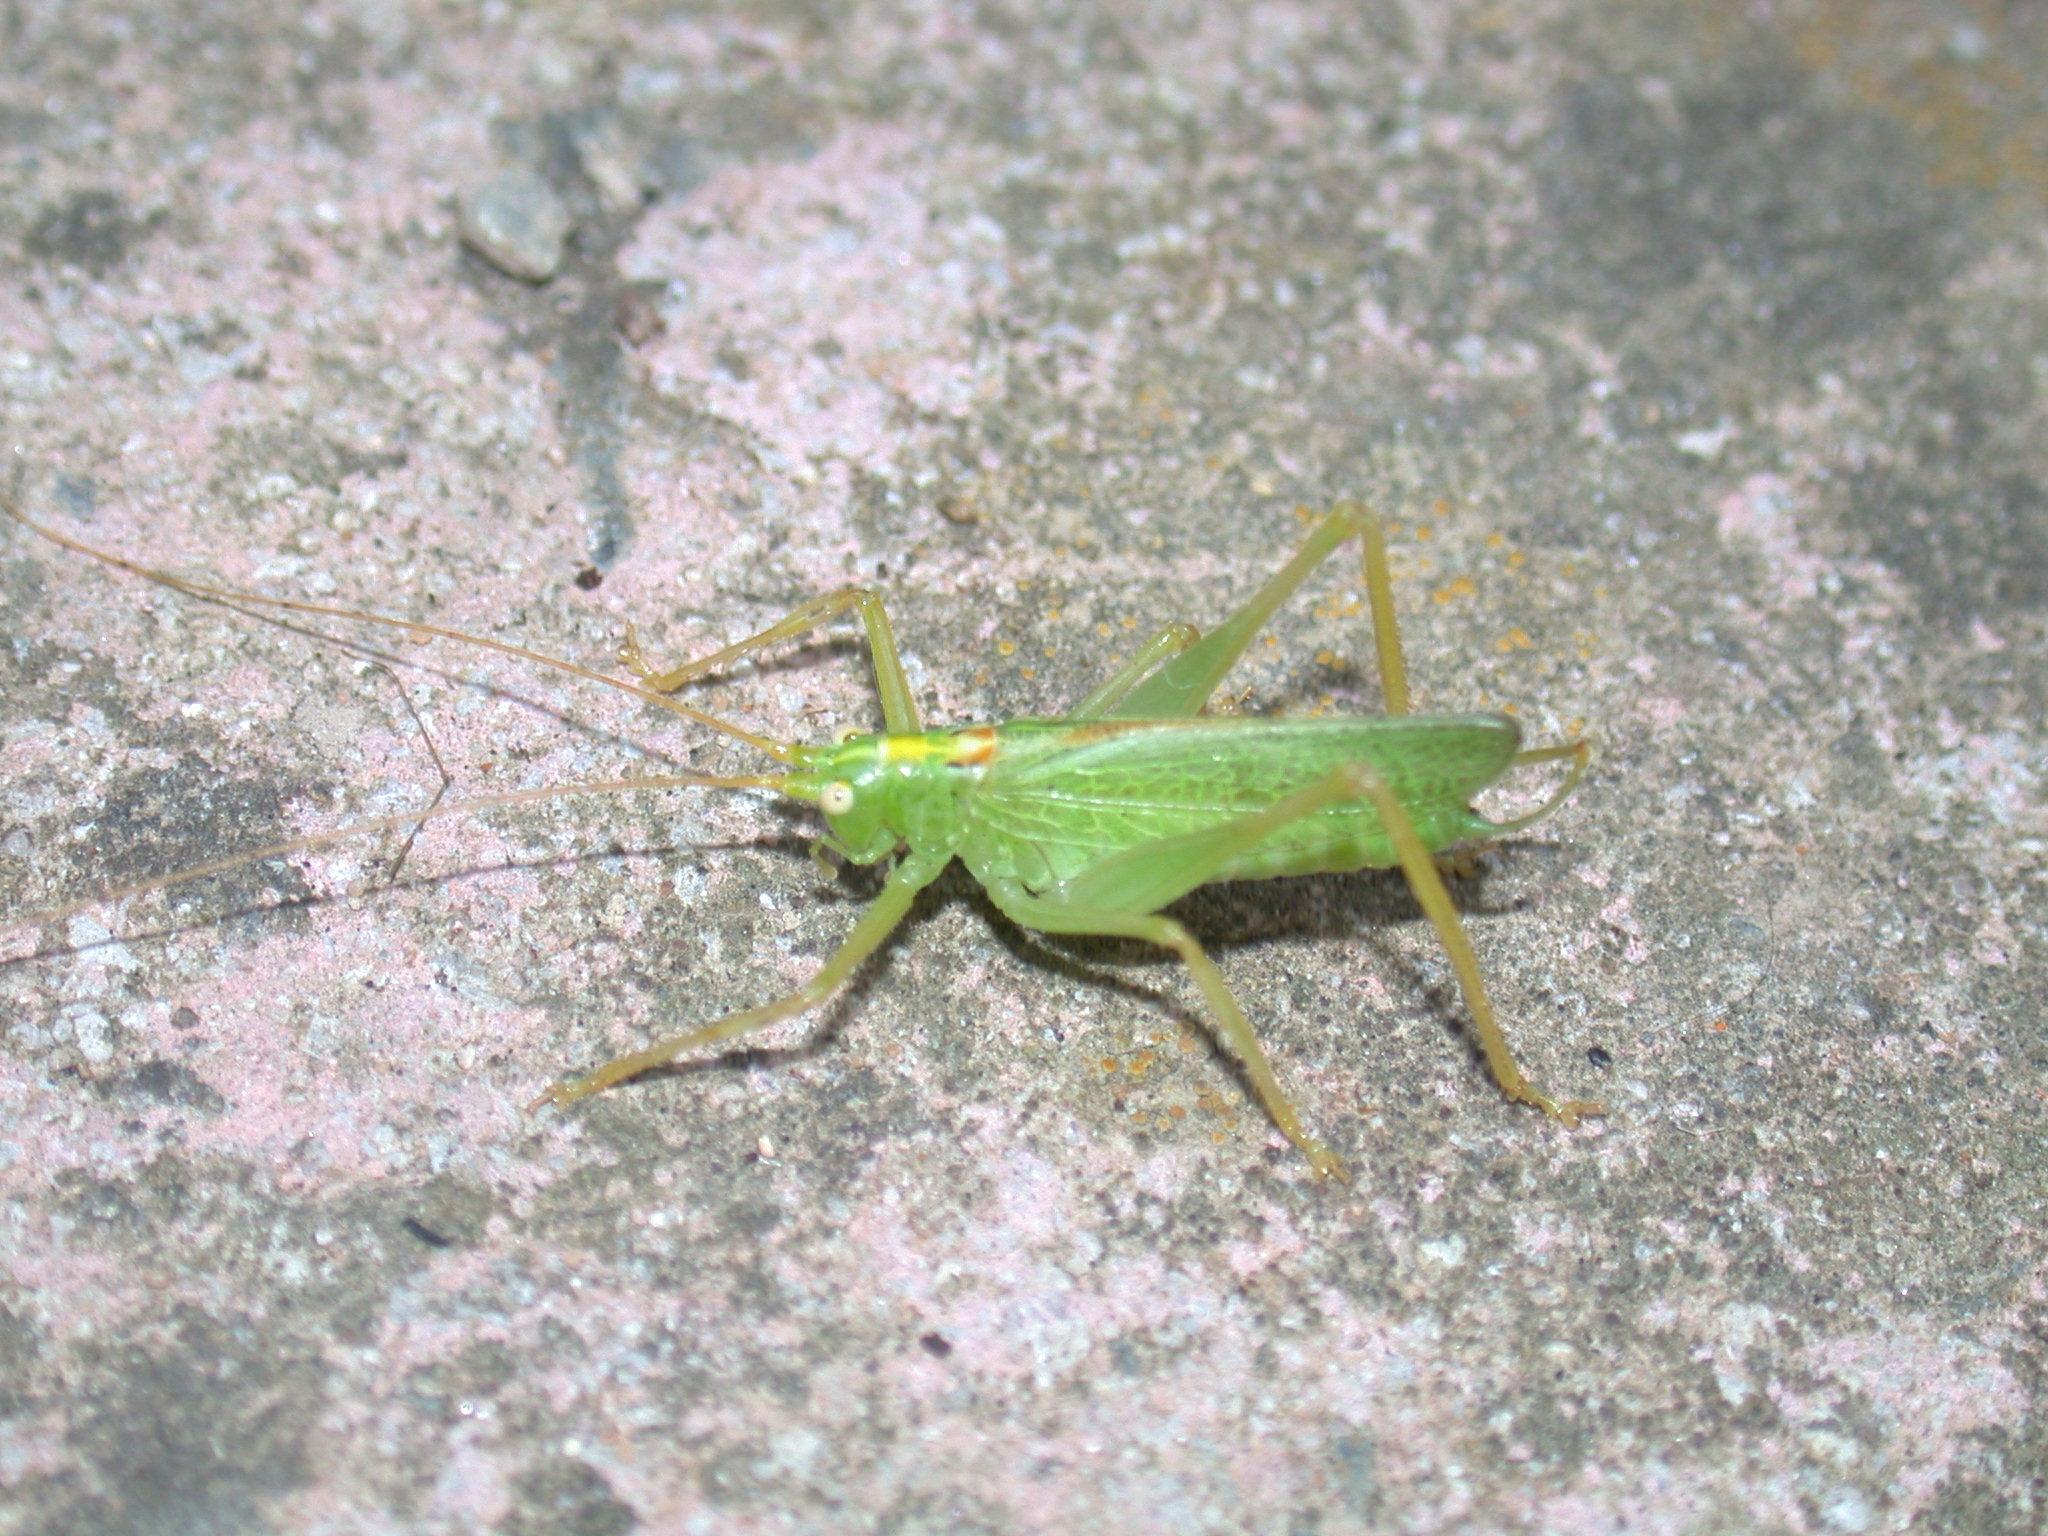 Bush crickets